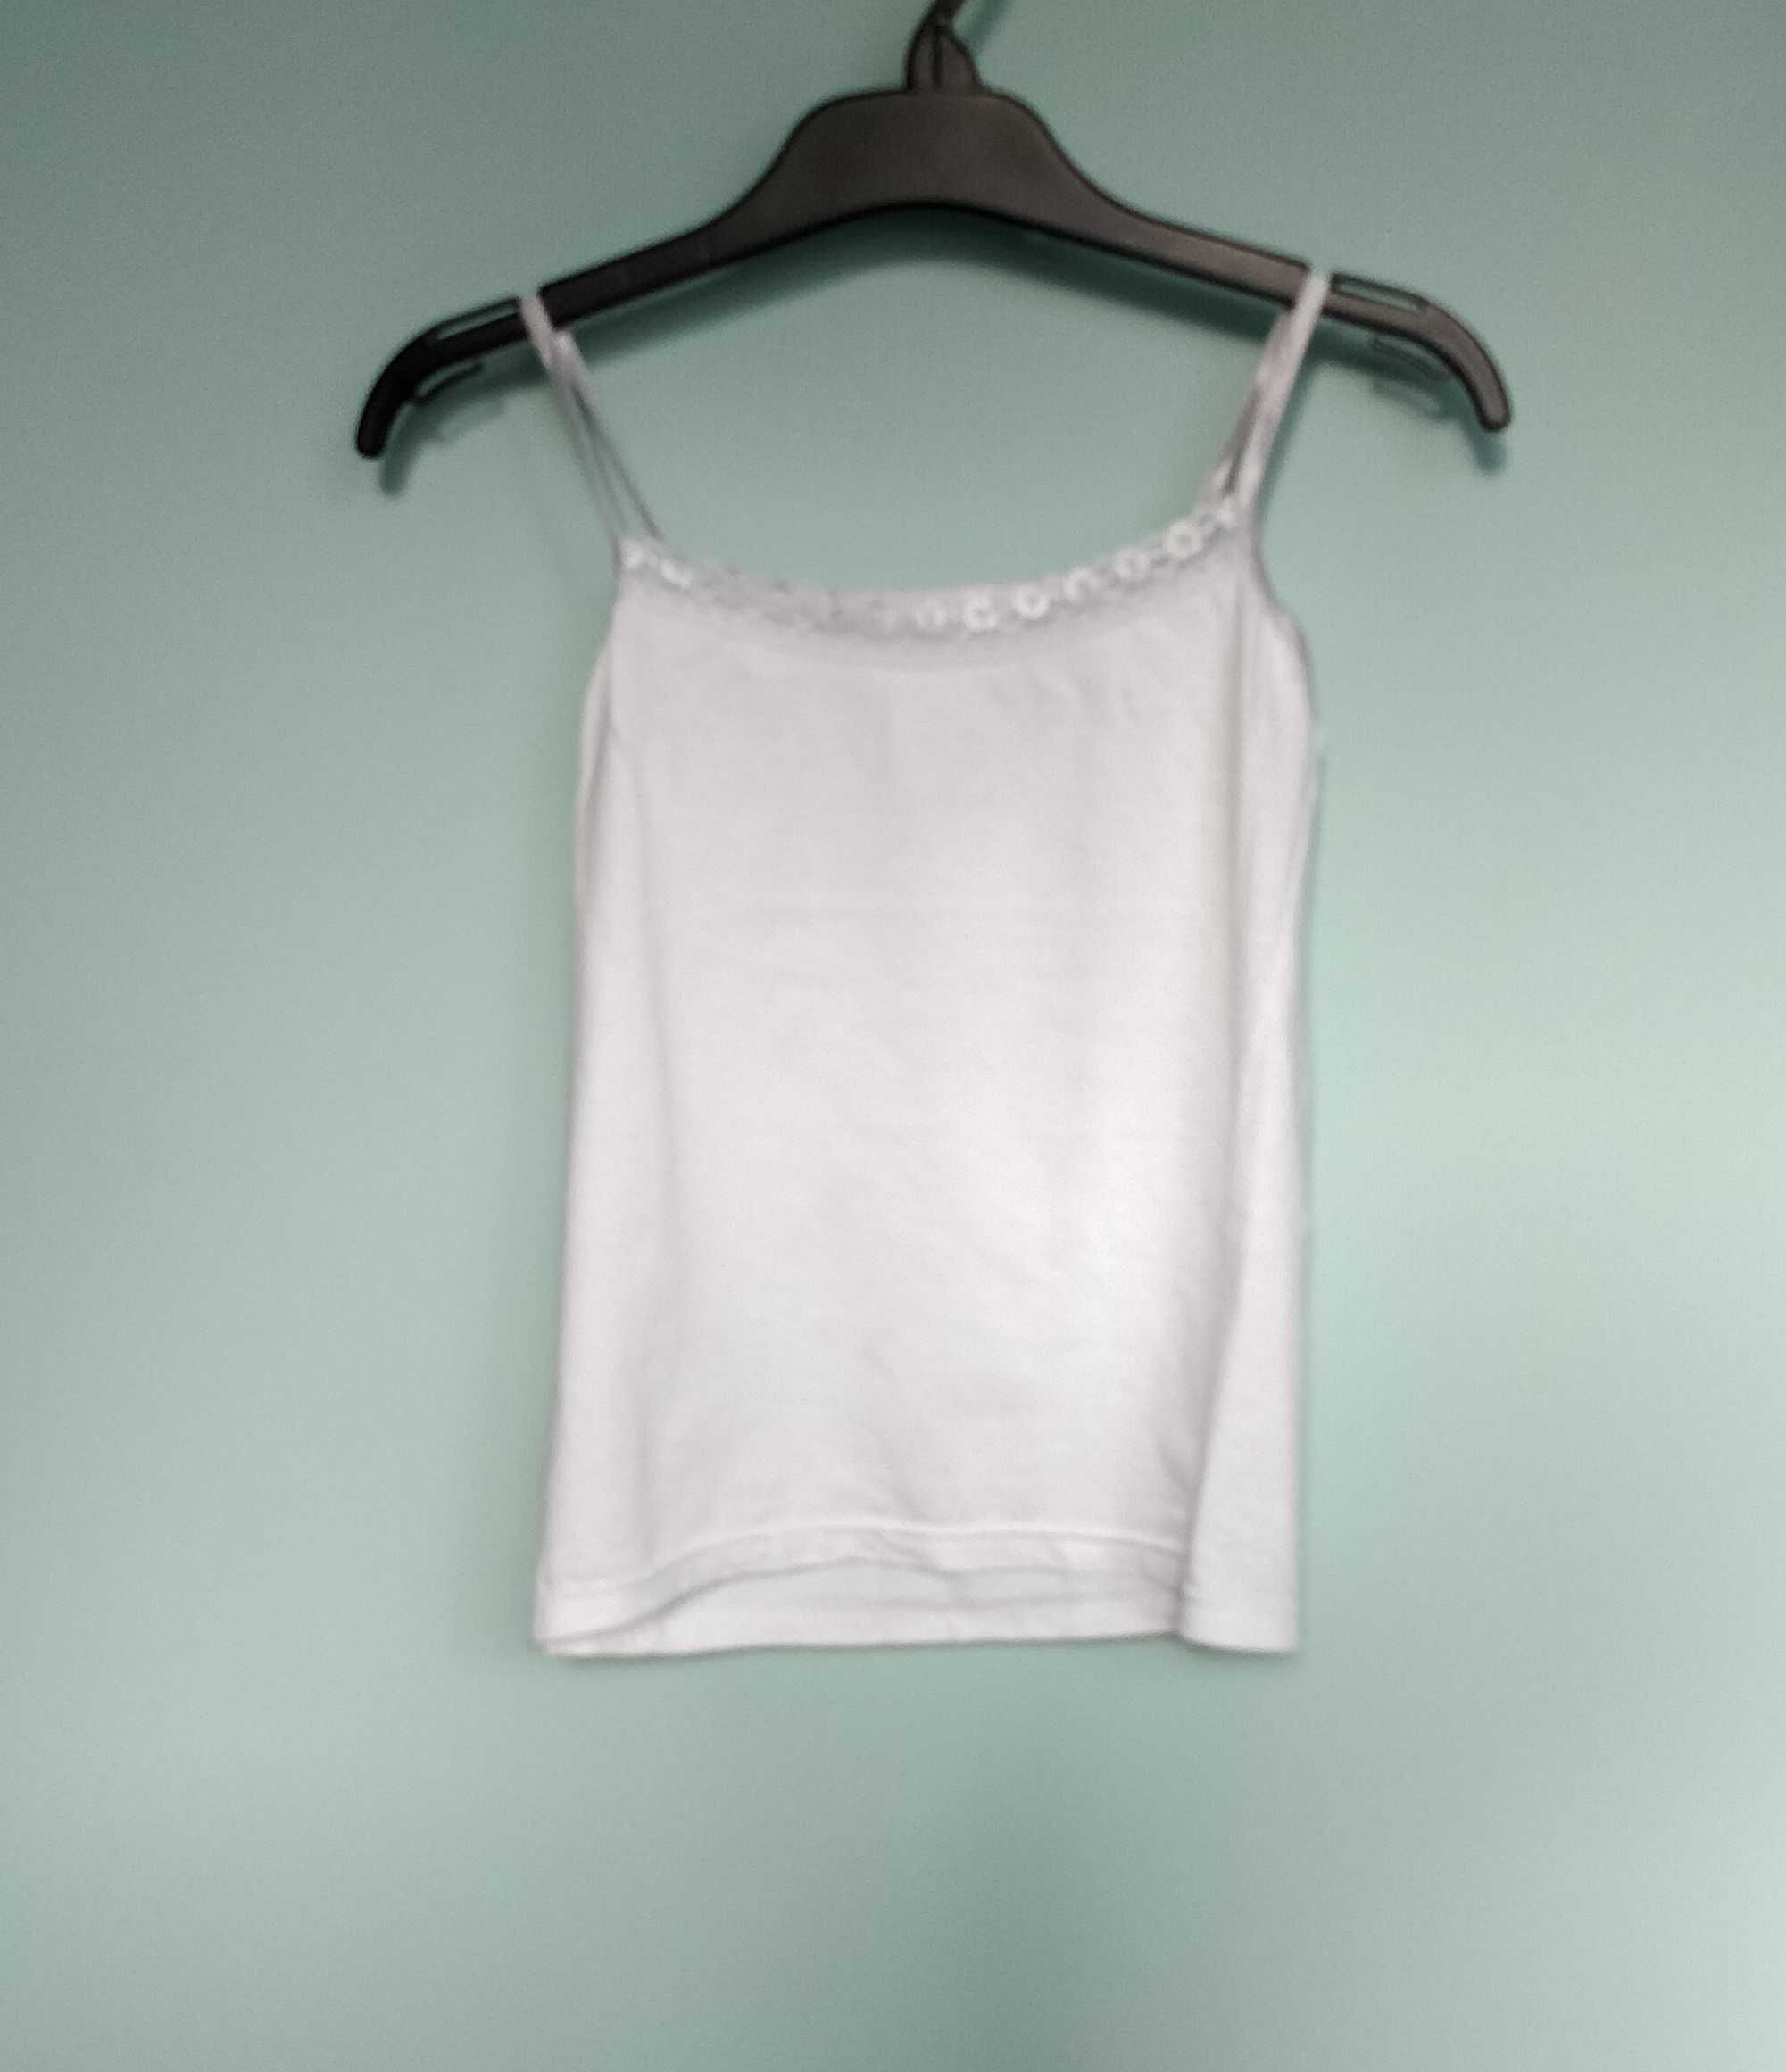 Podkoszulka, bluzeczka, rozmiar 116 - 122 cm, dziewczęca z koronką.